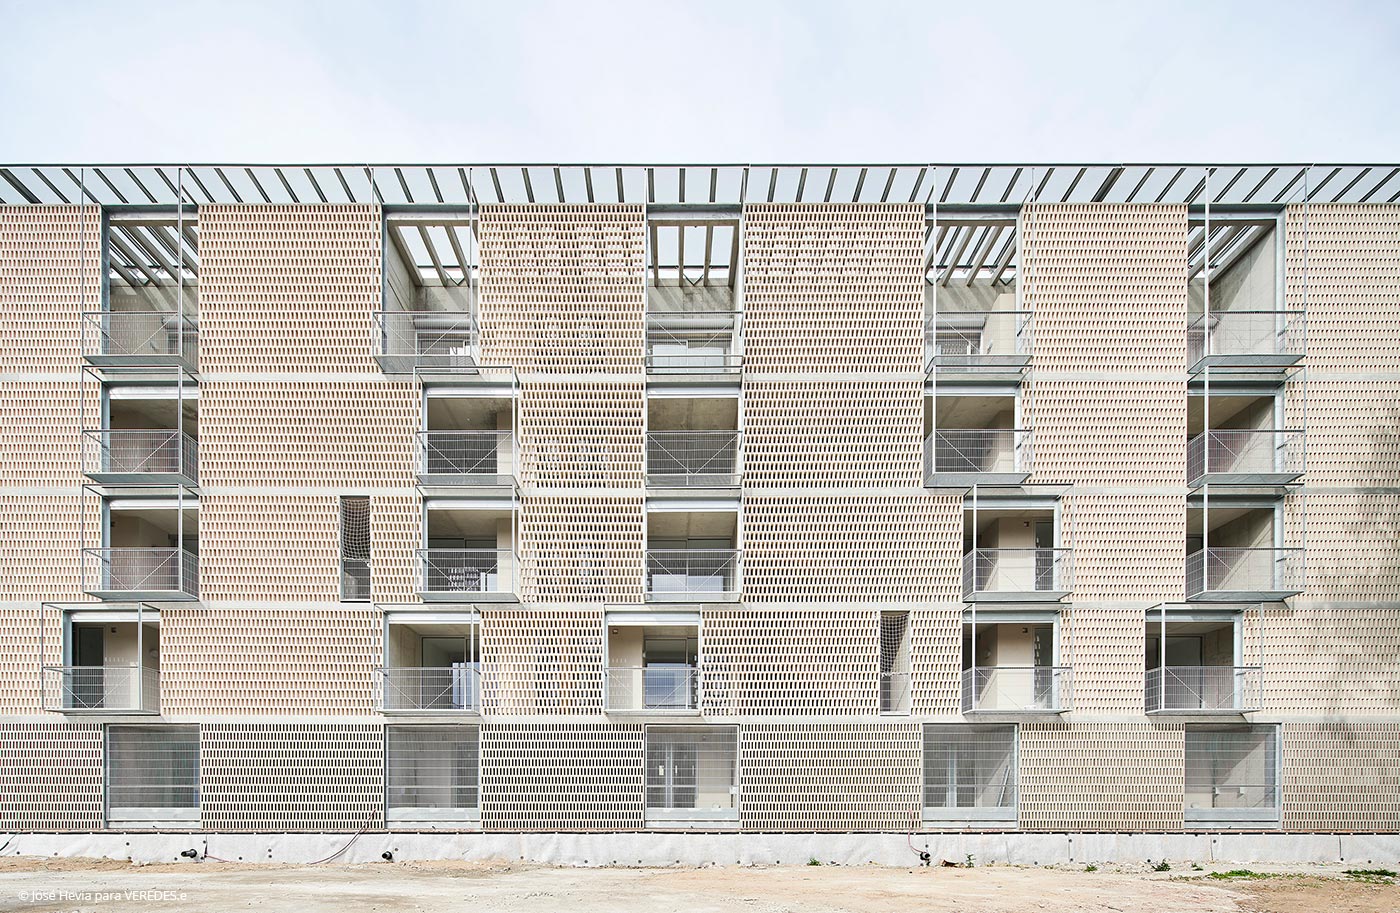 54 viviendas sociales en el barrio de Bon Pastor en Barcelona Peris+Toral Arquitectes 1